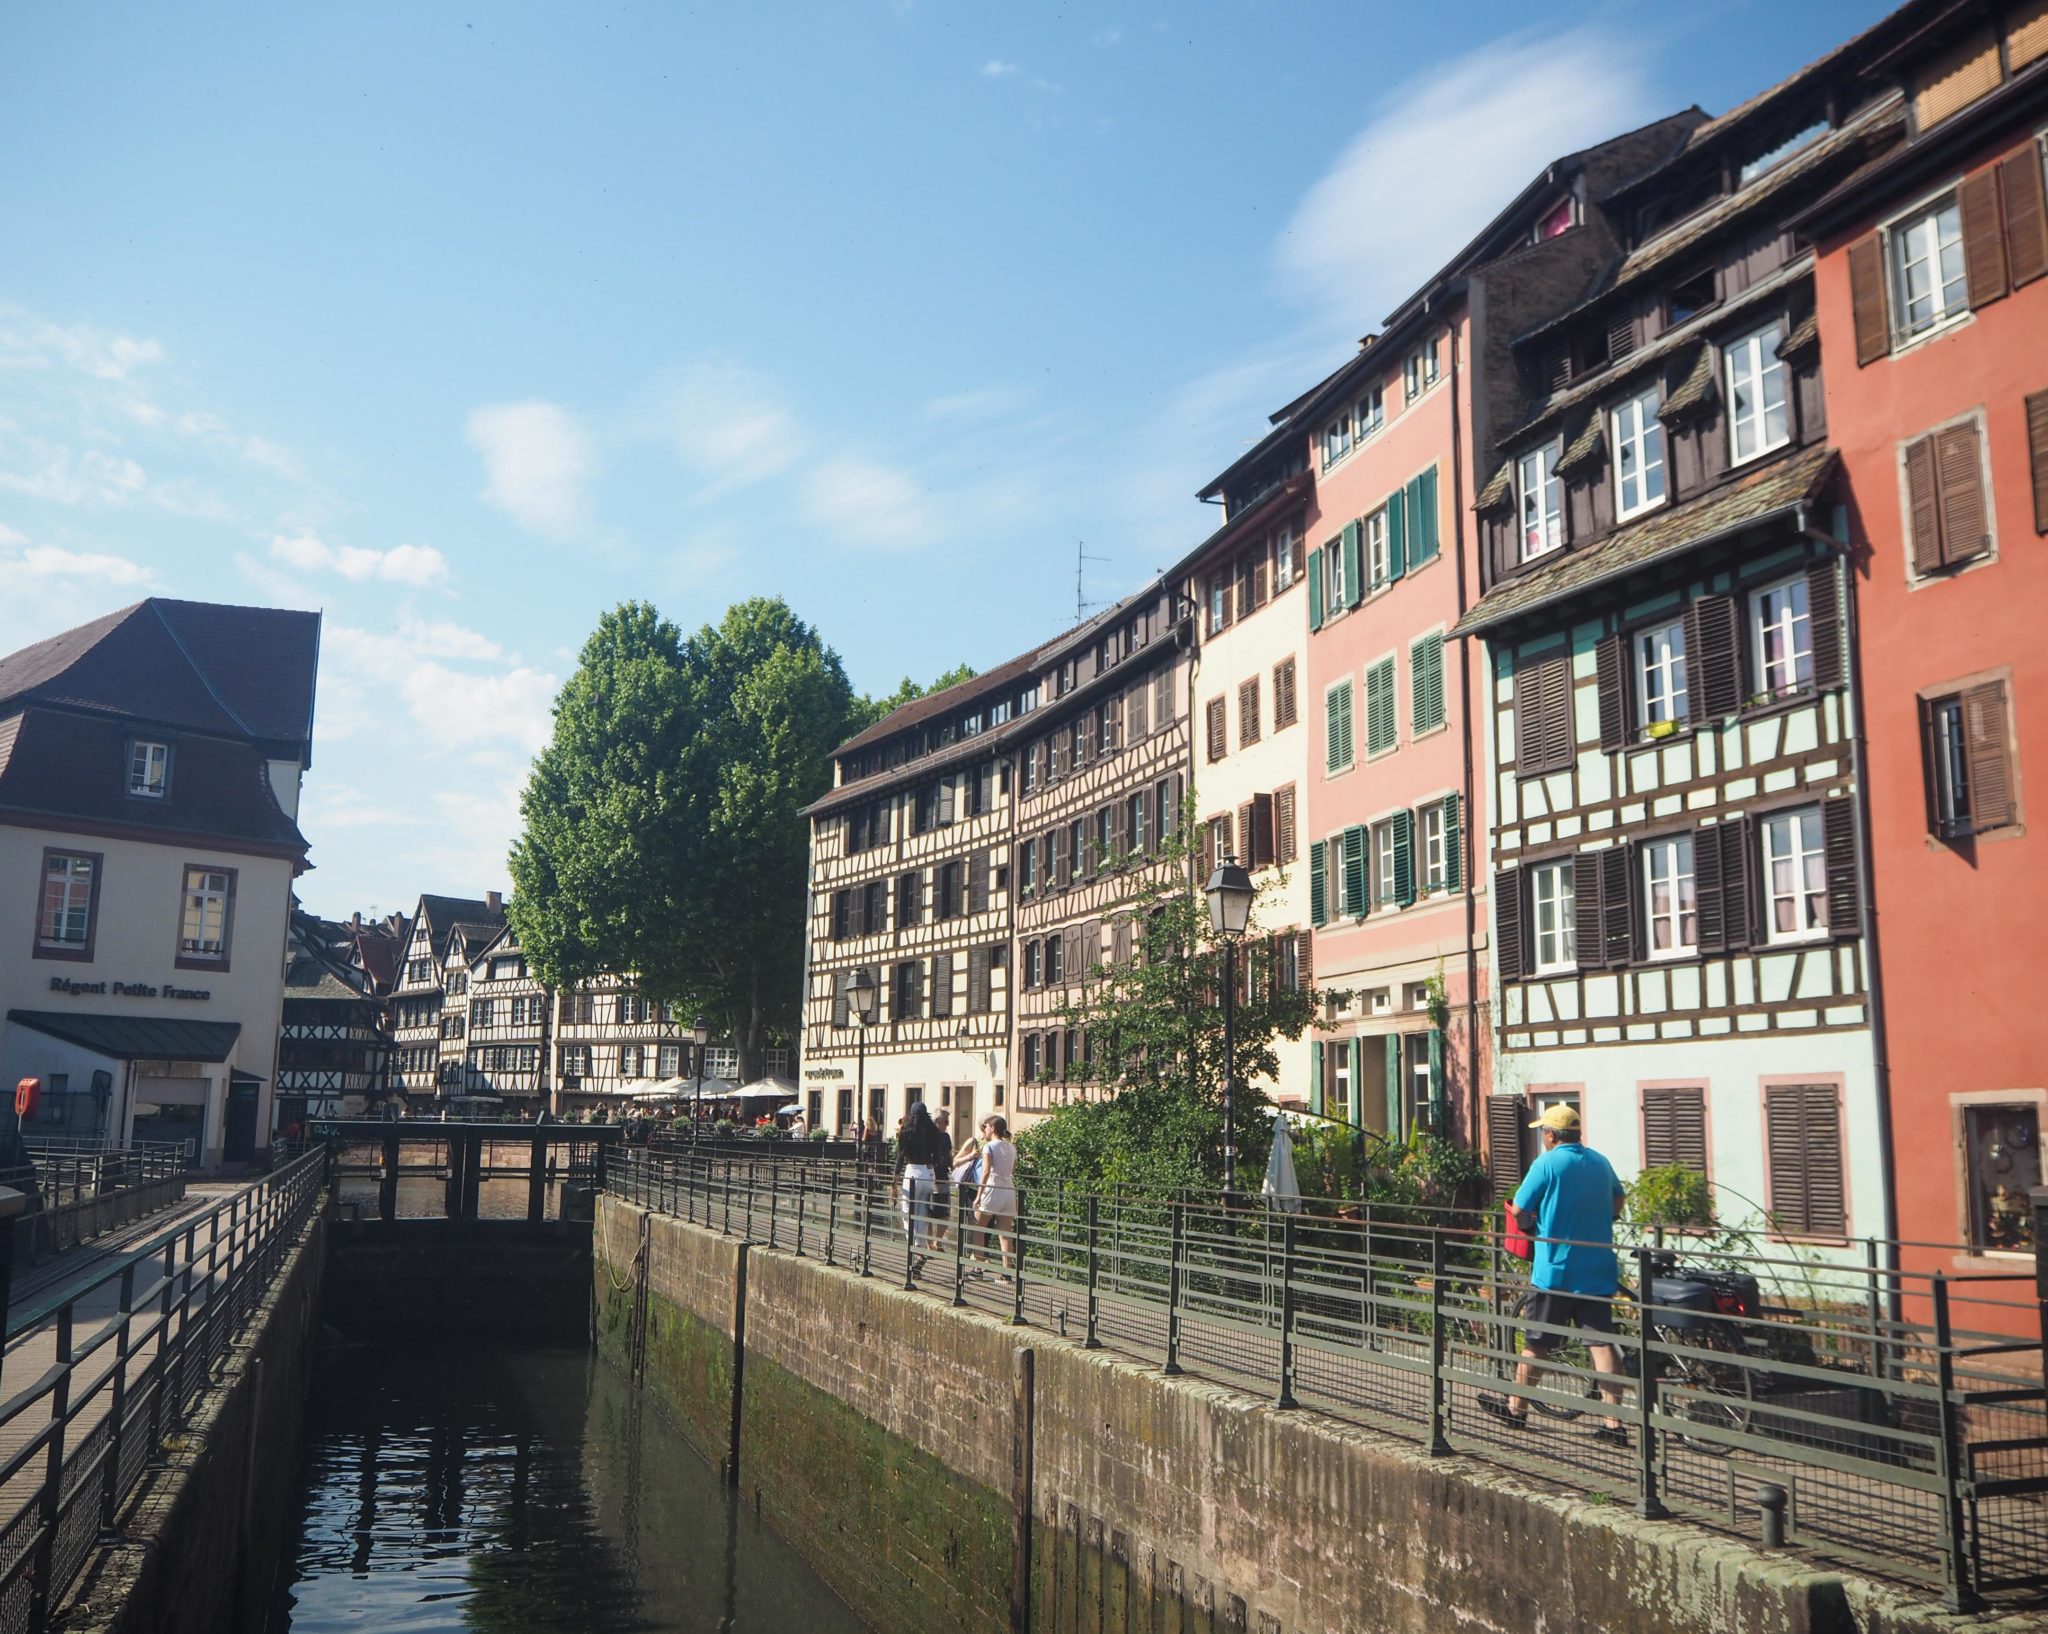 Visiter Strasbourg au fil de l'eau: 2 jours dans la capitale alsacienne entre amies - Par Voyages et Vagabondages, le blog du voyage en solo au féminin - Récit, photos, conseils, idées de visite et bonnes adresses pour visiter Strasbourg